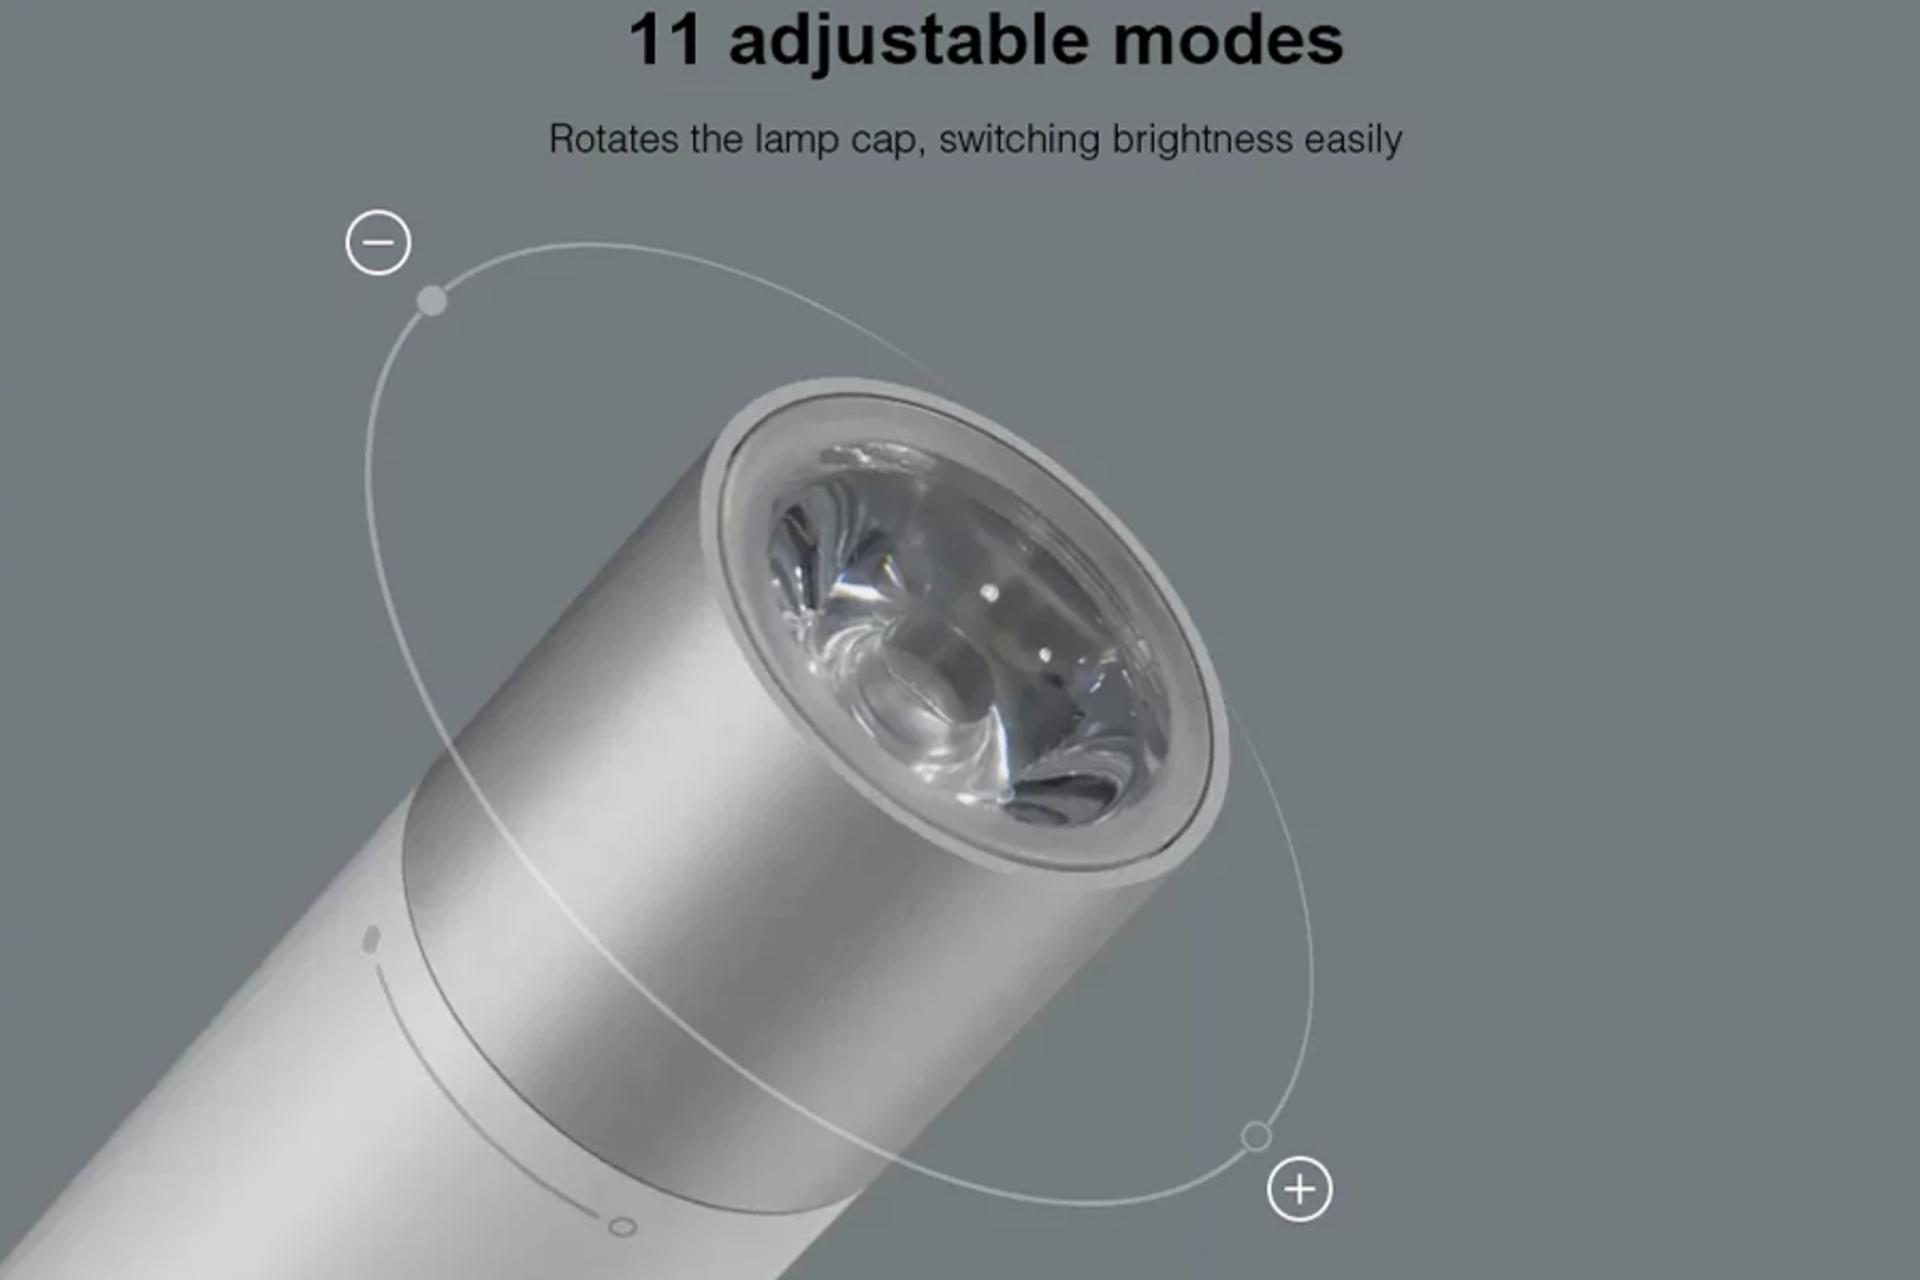 شیائومی Portable Flashlight با ظرفیت 3350 میلی‌آمپر ساعت / Xiaomi Portable Flashlight LPB01ZM 3350